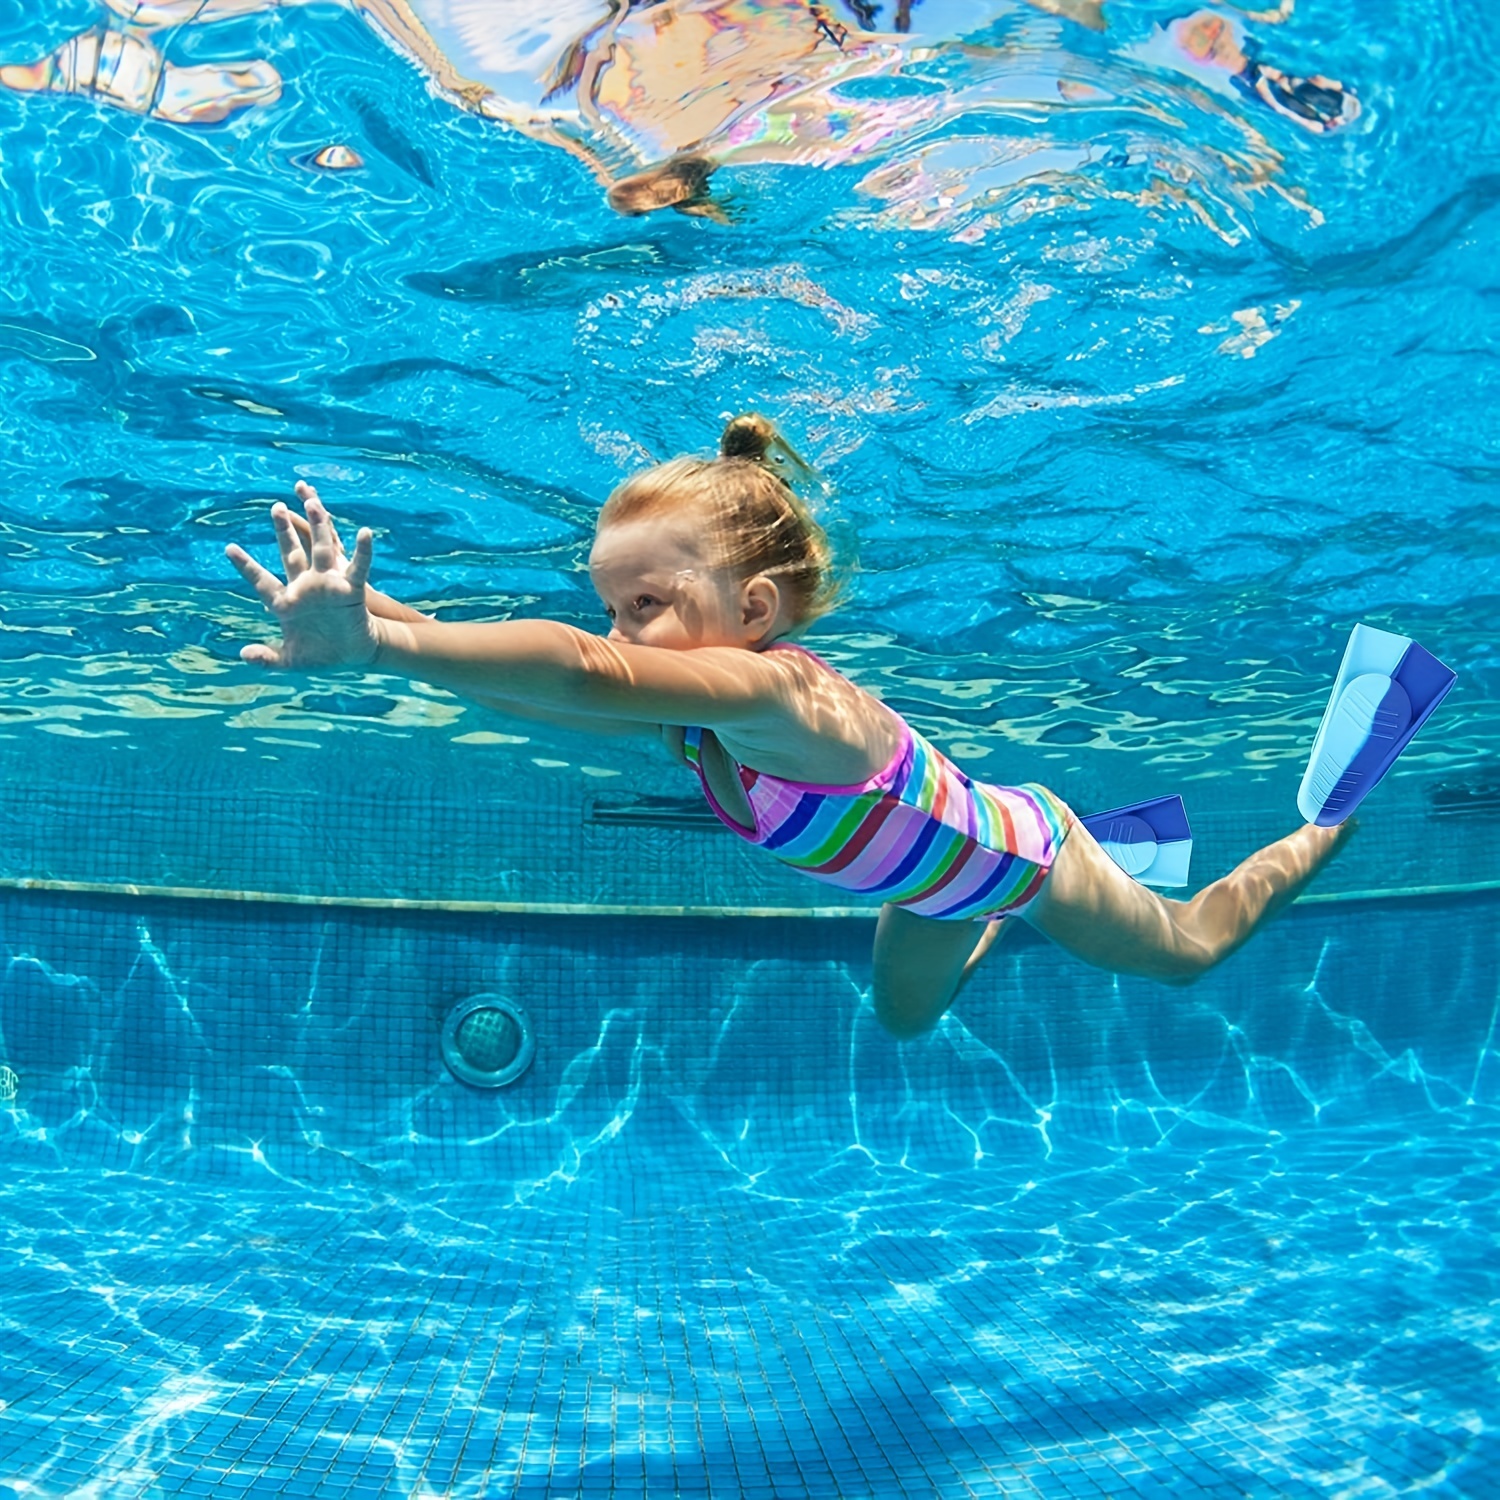 El uso de aletas en la piscina para mejorar la técnica